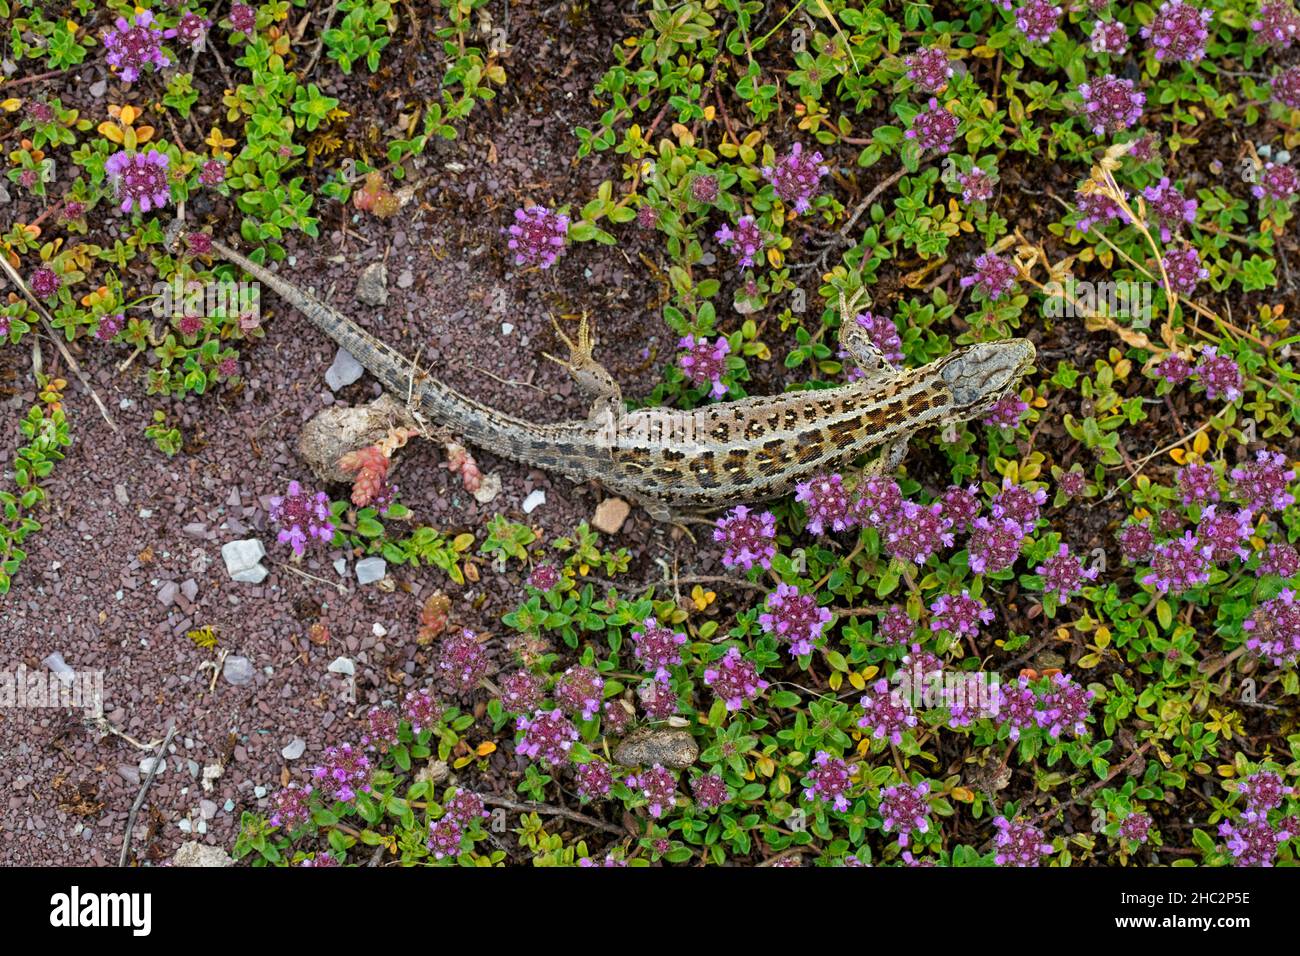 Lizard de sable (Lacerta agilis) femelle fourrager parmi le thym à feuilles larges / thym citron (Thymus pulegioides) en fleur dans la lande en été Banque D'Images